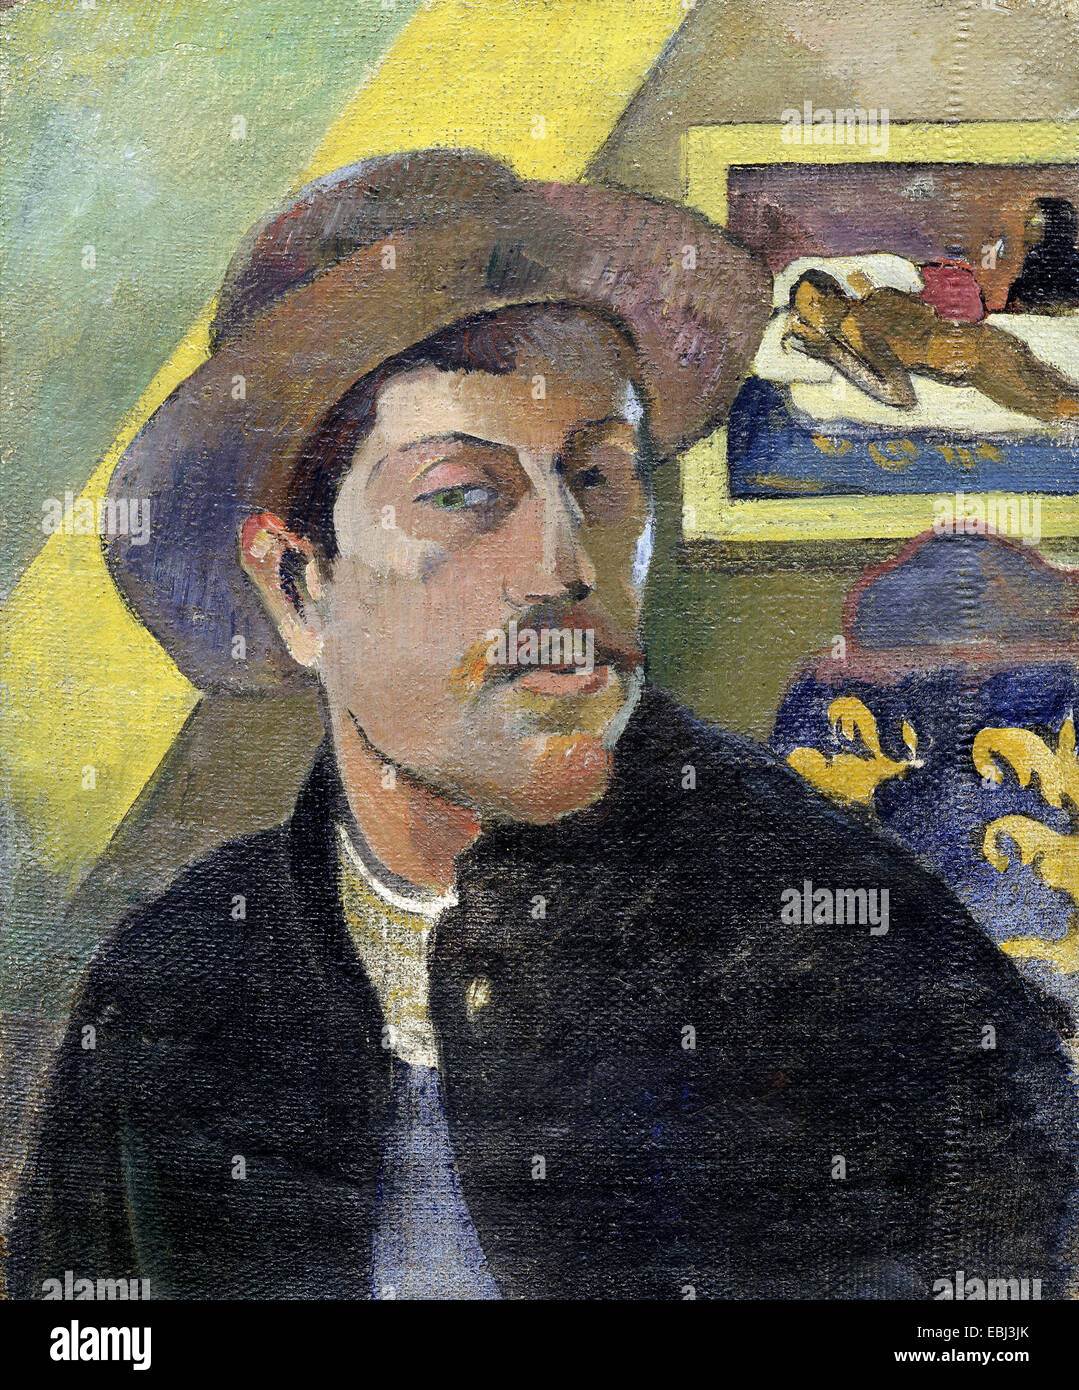 Paul Gauguin, autoritratto con un cappello. Circa 1893-1894. Olio su tela. Musée d'Orsay, Parigi, Francia. Foto Stock